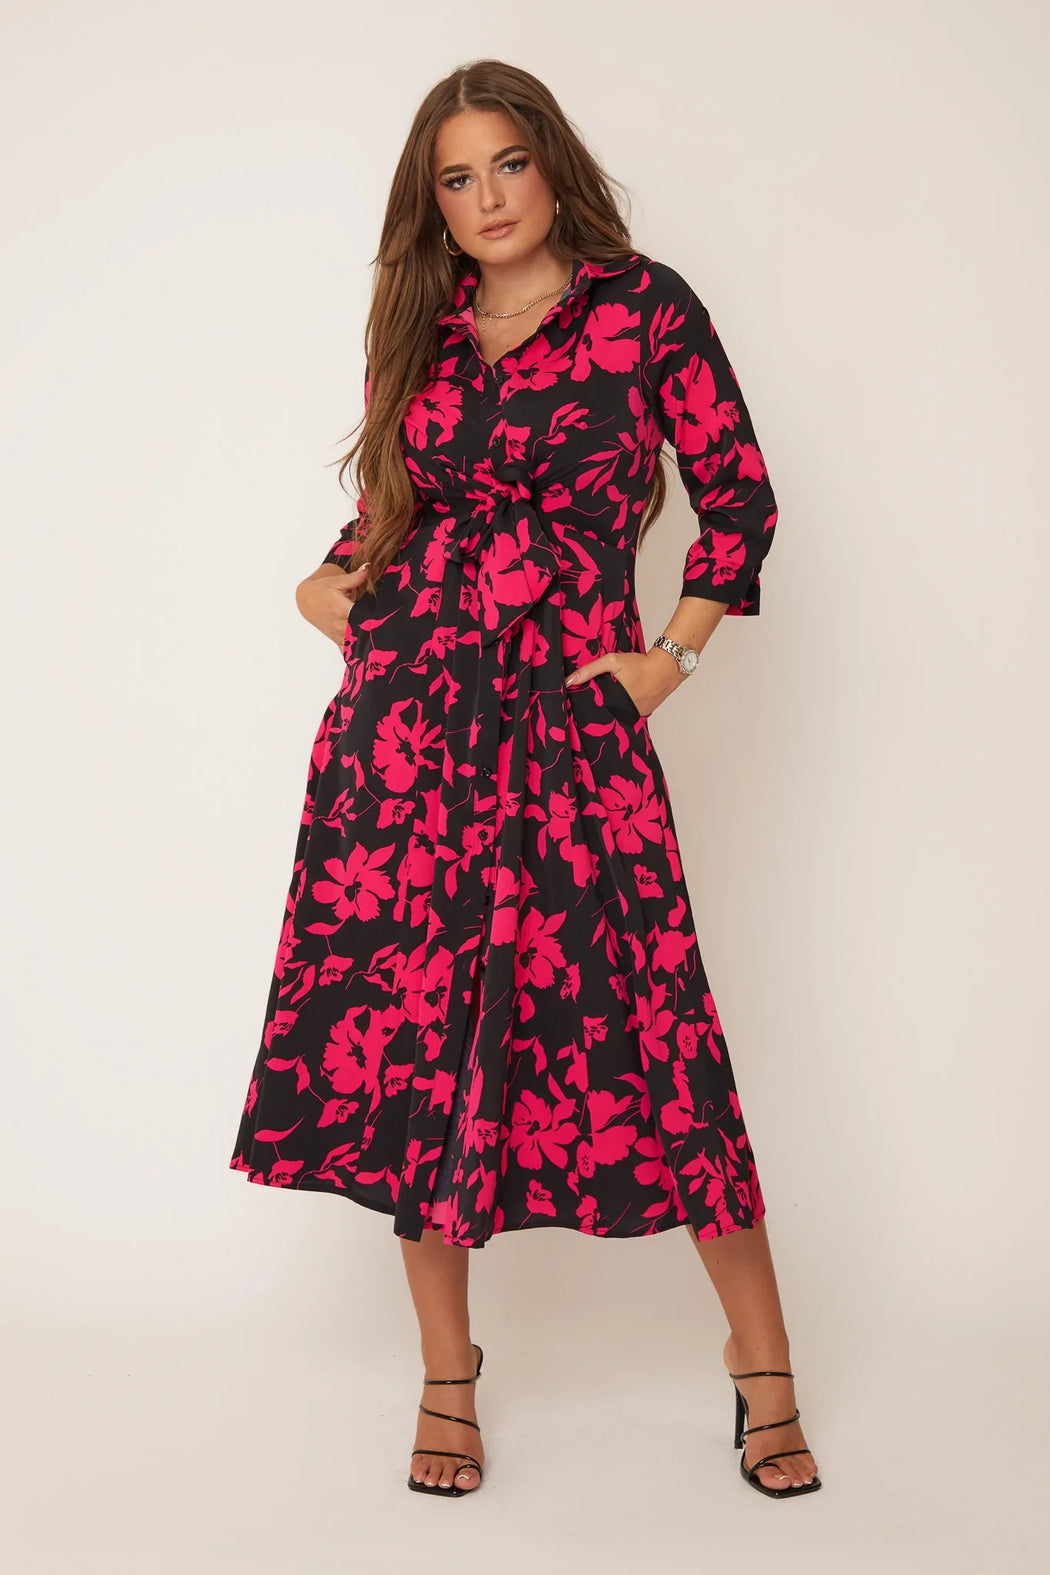 Odette Black & Pink Floral Tie Front Shirt Dress